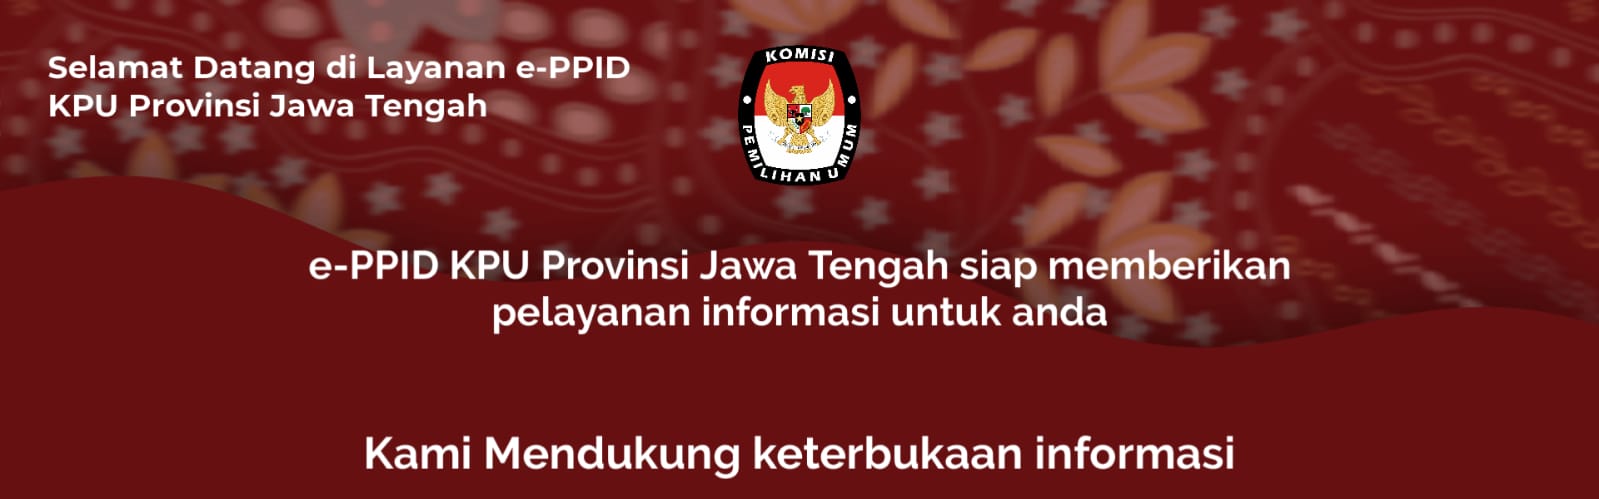 Selamat Datang di PPID KPU Provinsi Jawa Tengah